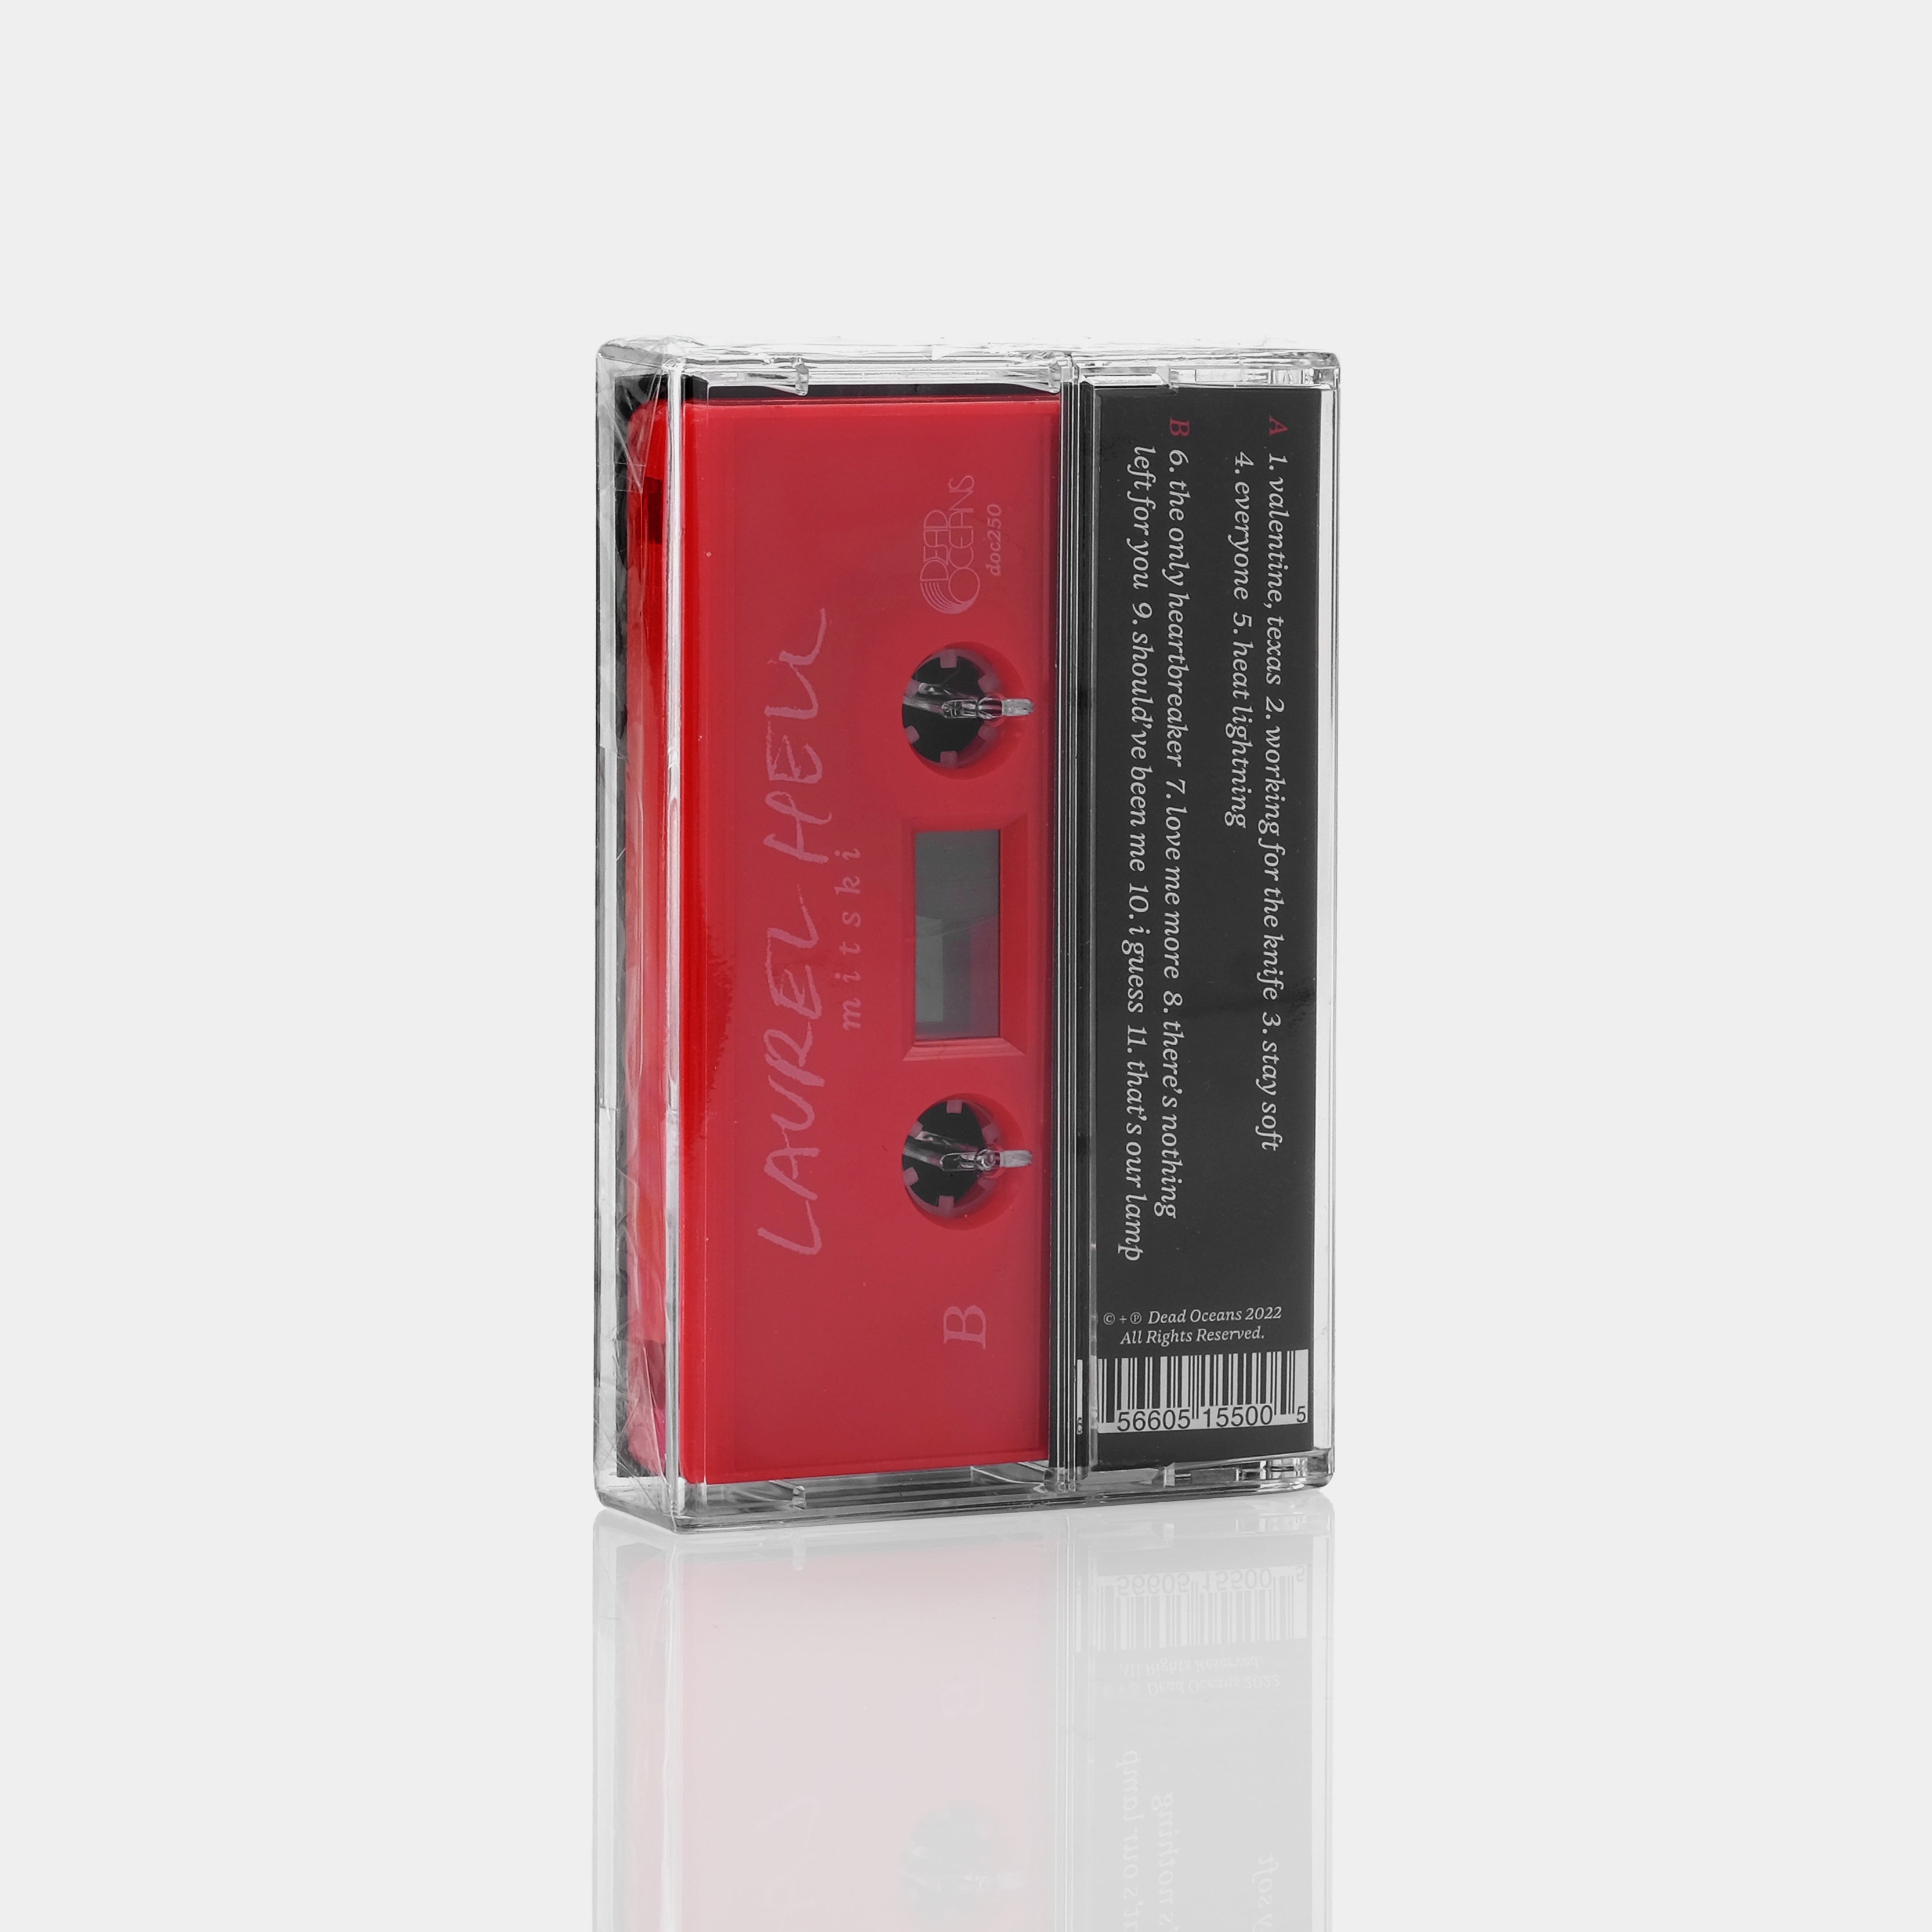 Mitski - Laurel Hell Cassette Tape